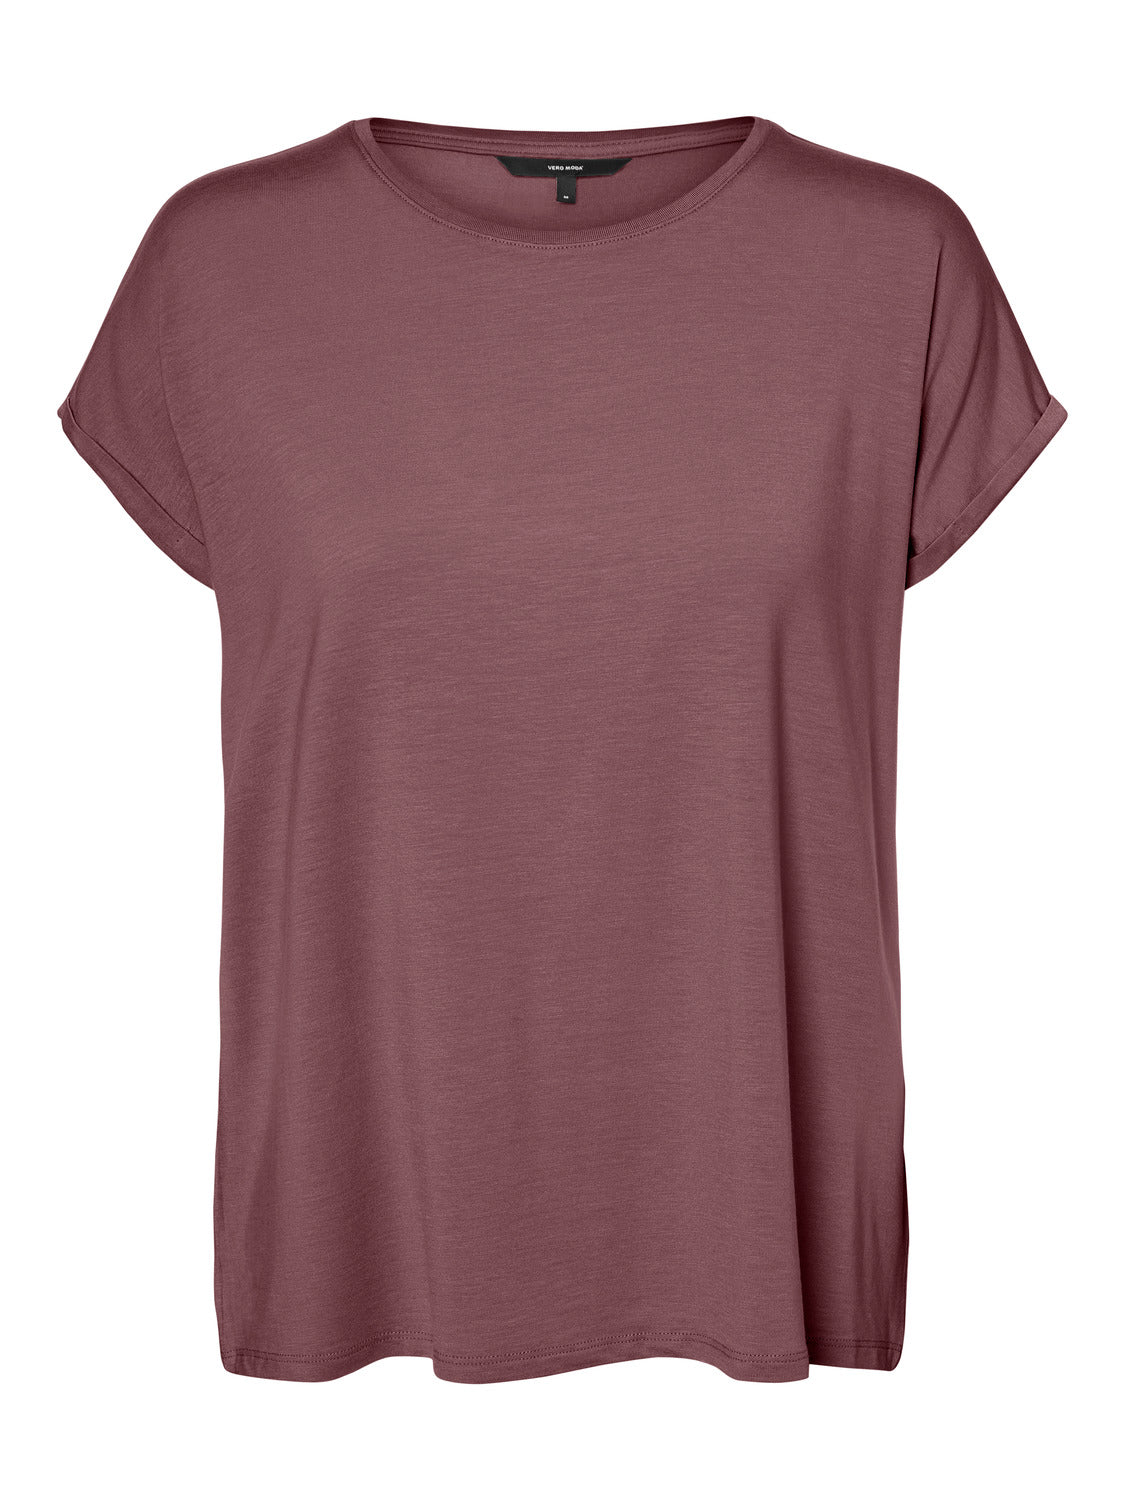 VMAVA T-Shirt - Rose Brown